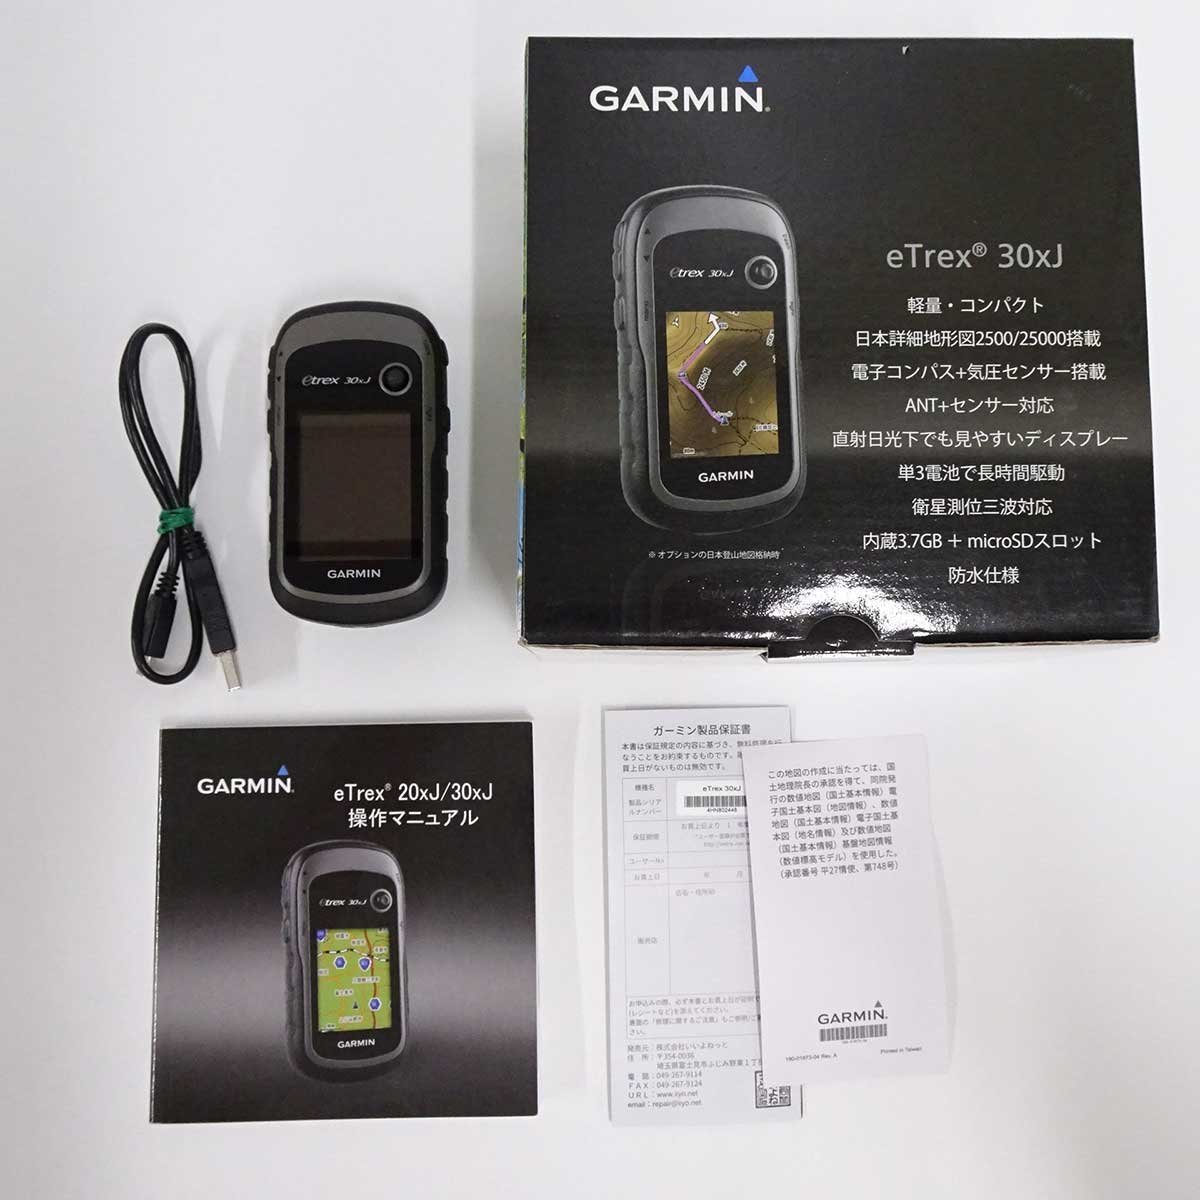 ガーミン GARMIN T5 X 最新モデル ドッグデバイス 犬 追跡装置 犬用 GPS 首輪 スポーツ、レジャー キャンプ、アウトドア用品  ナビゲーション